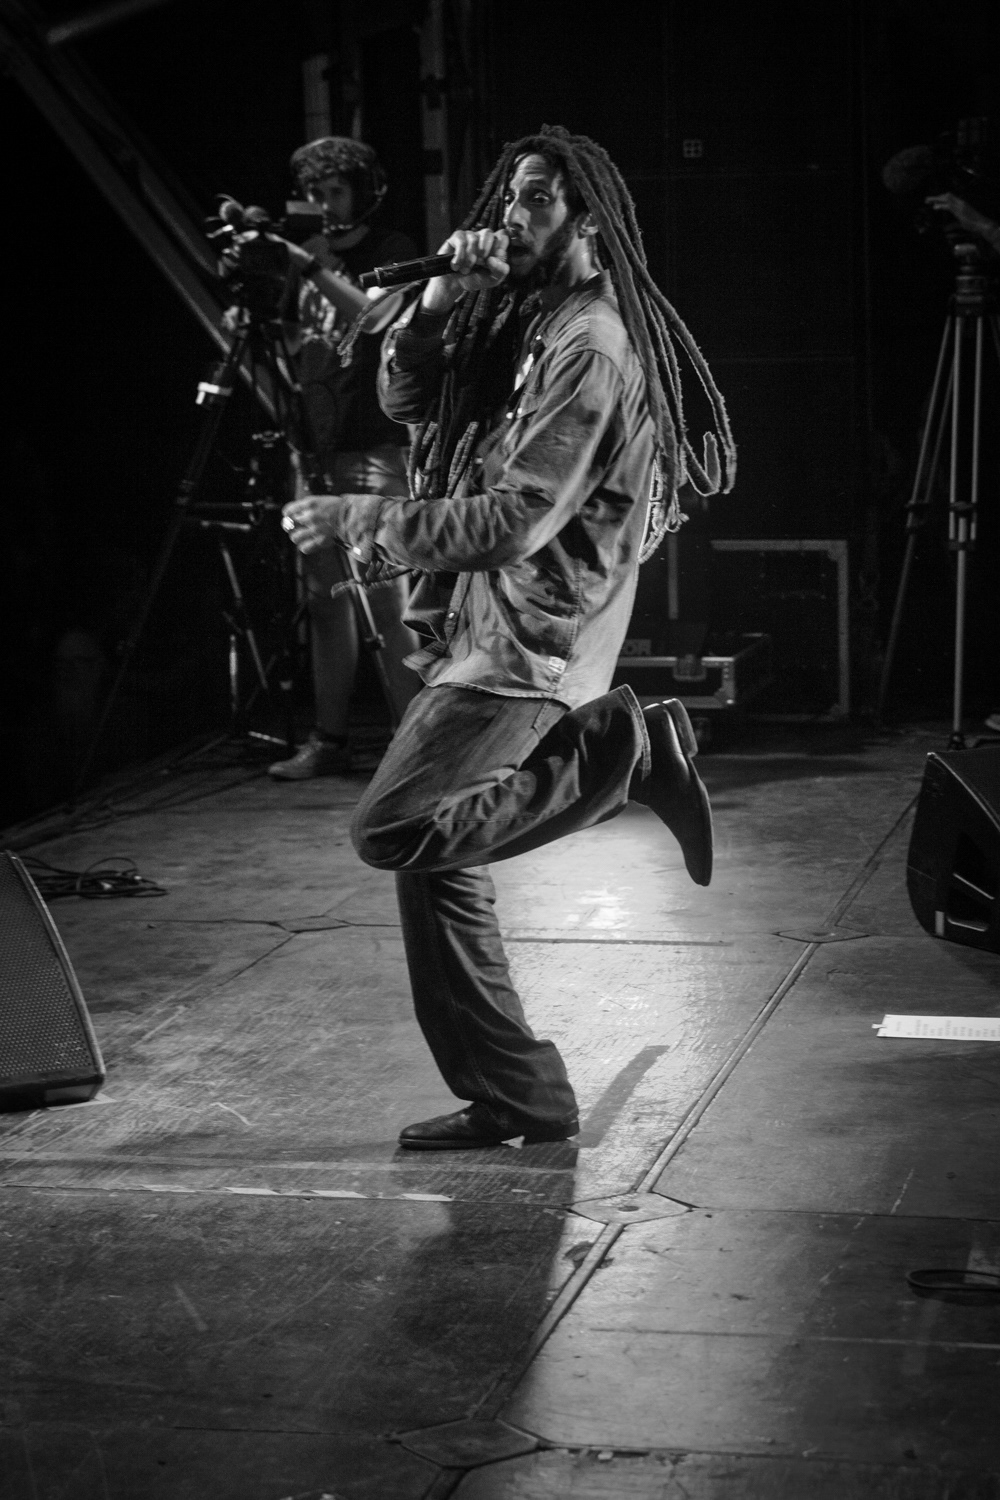 julian marley marley Bob Marley Tuff Gong ghetto youths jamaica reggae woodford festival woodford Australia